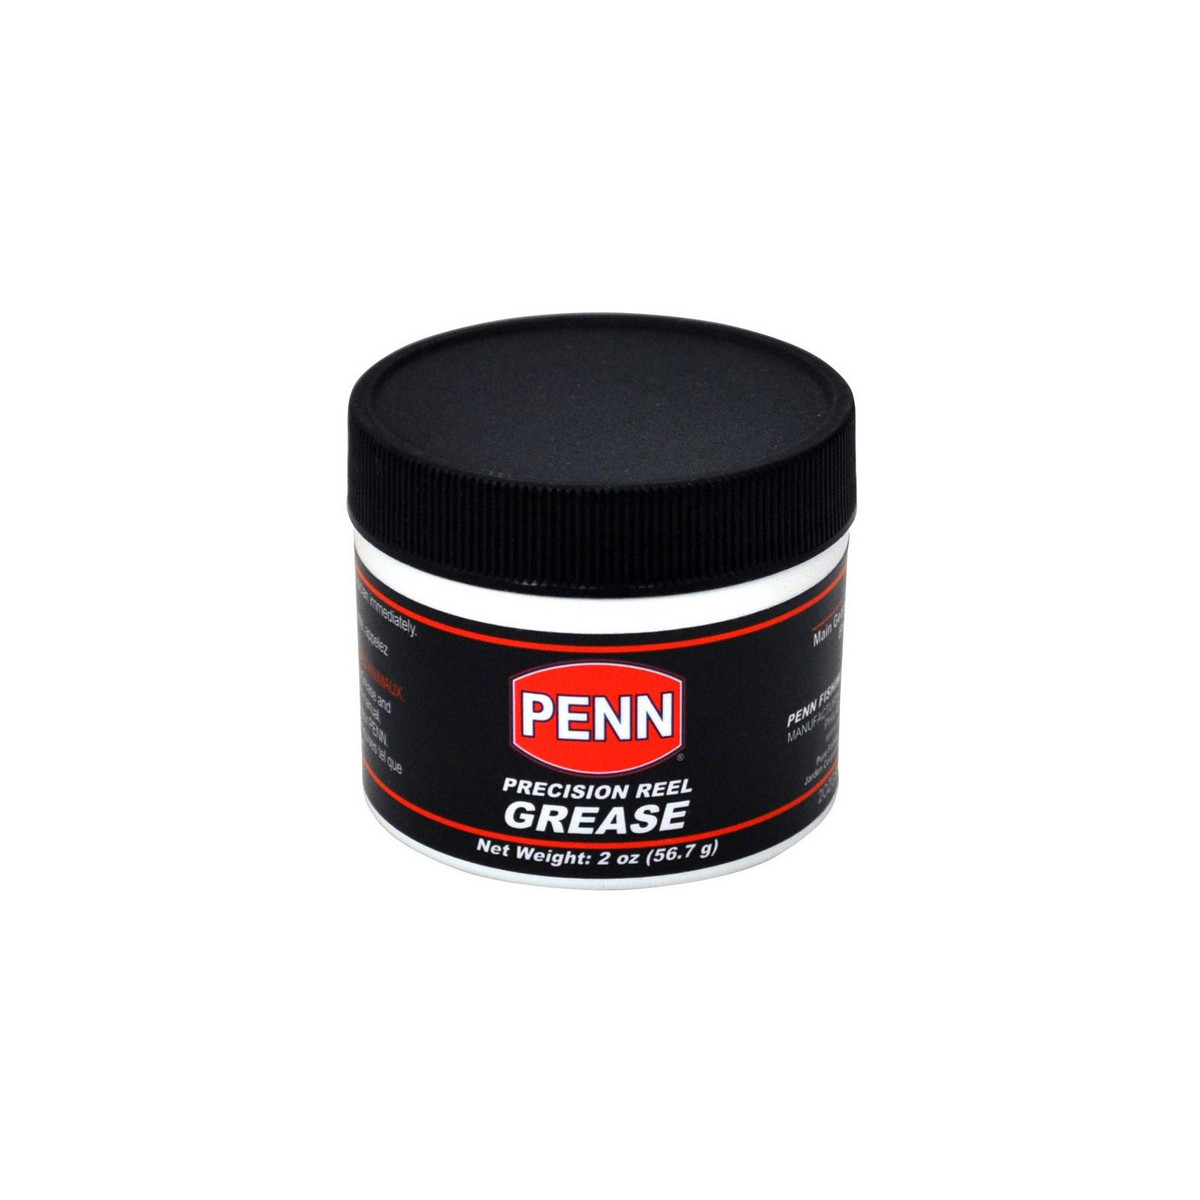 Penn 2 oz Reel Oil